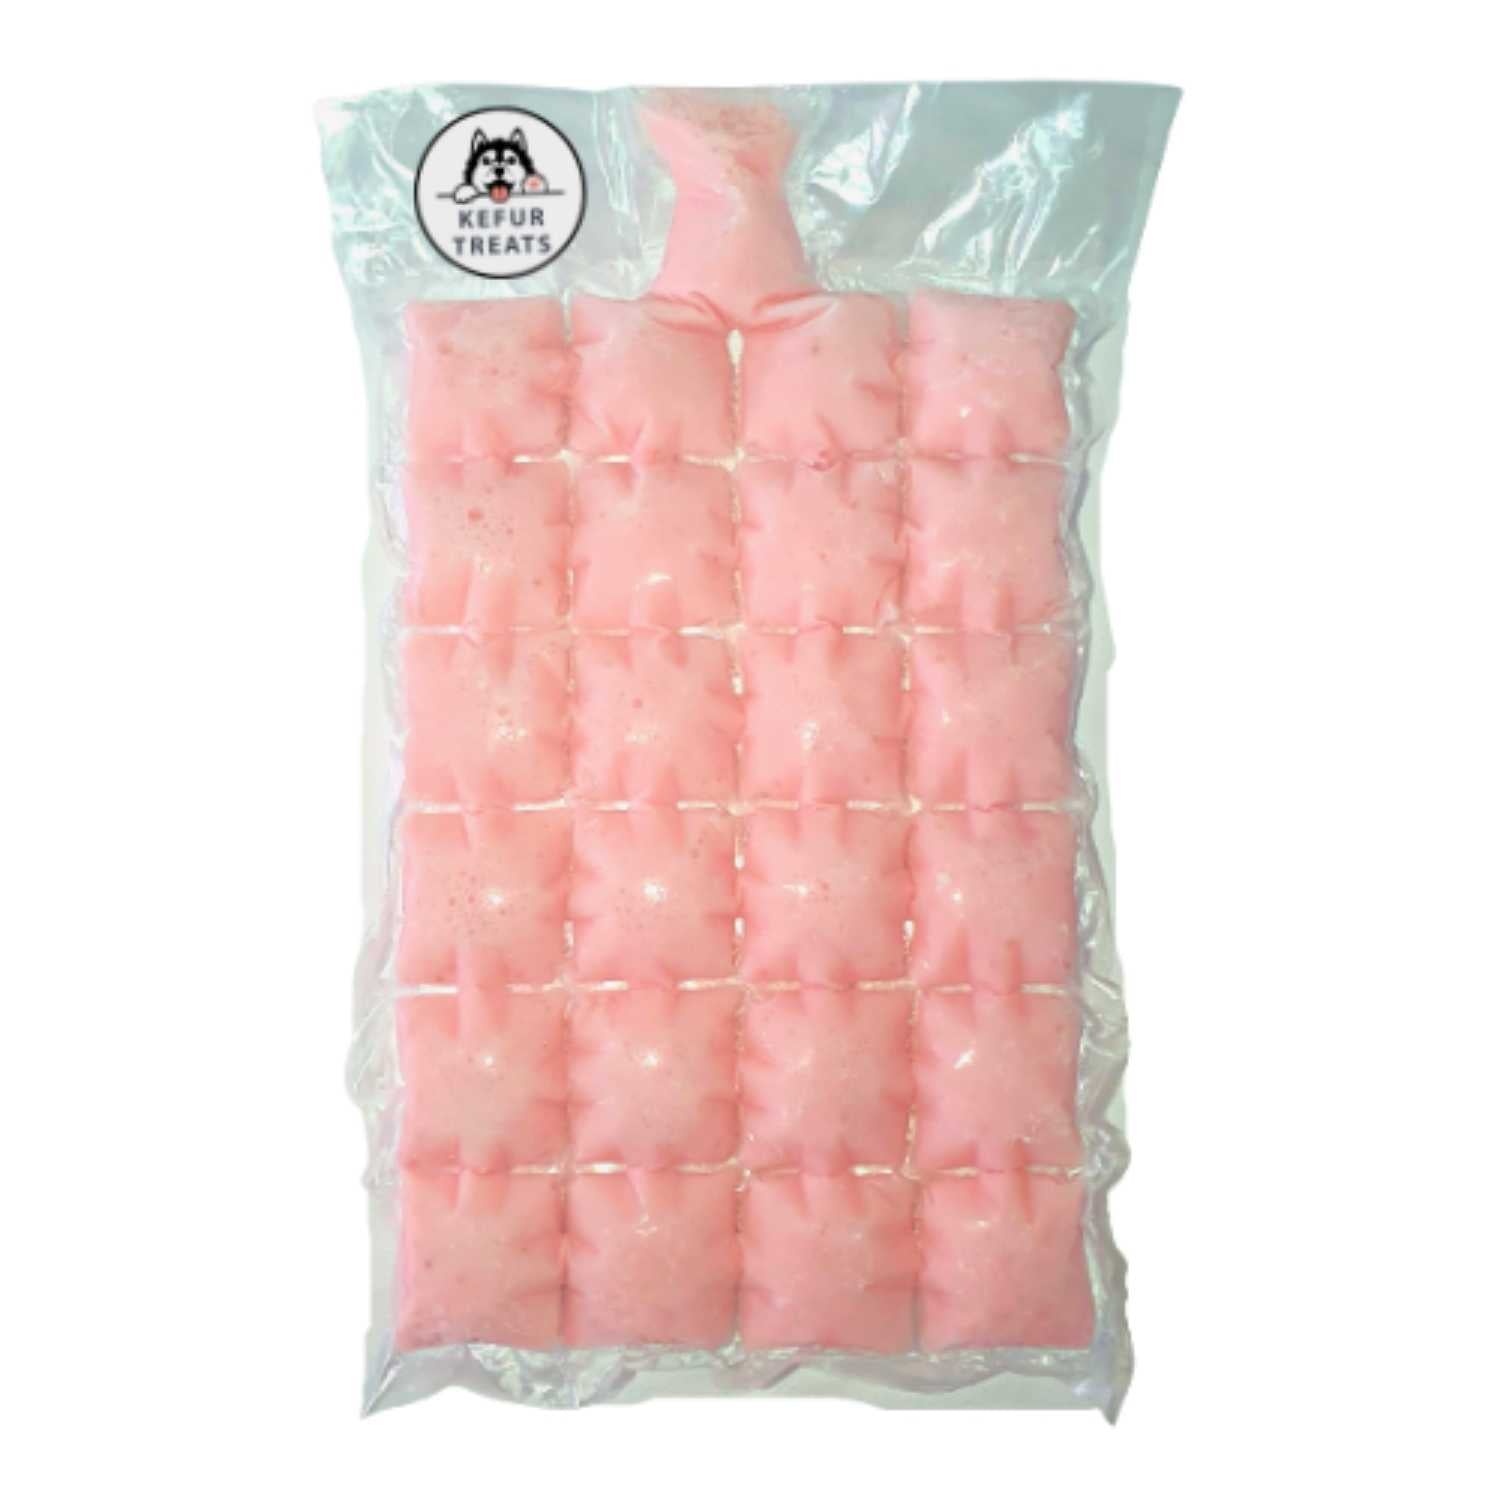 KEFUR TREATS - STRAWBERRY Cow Milk Kefir Frozen Pack (24 Cubes) - Pet Treats